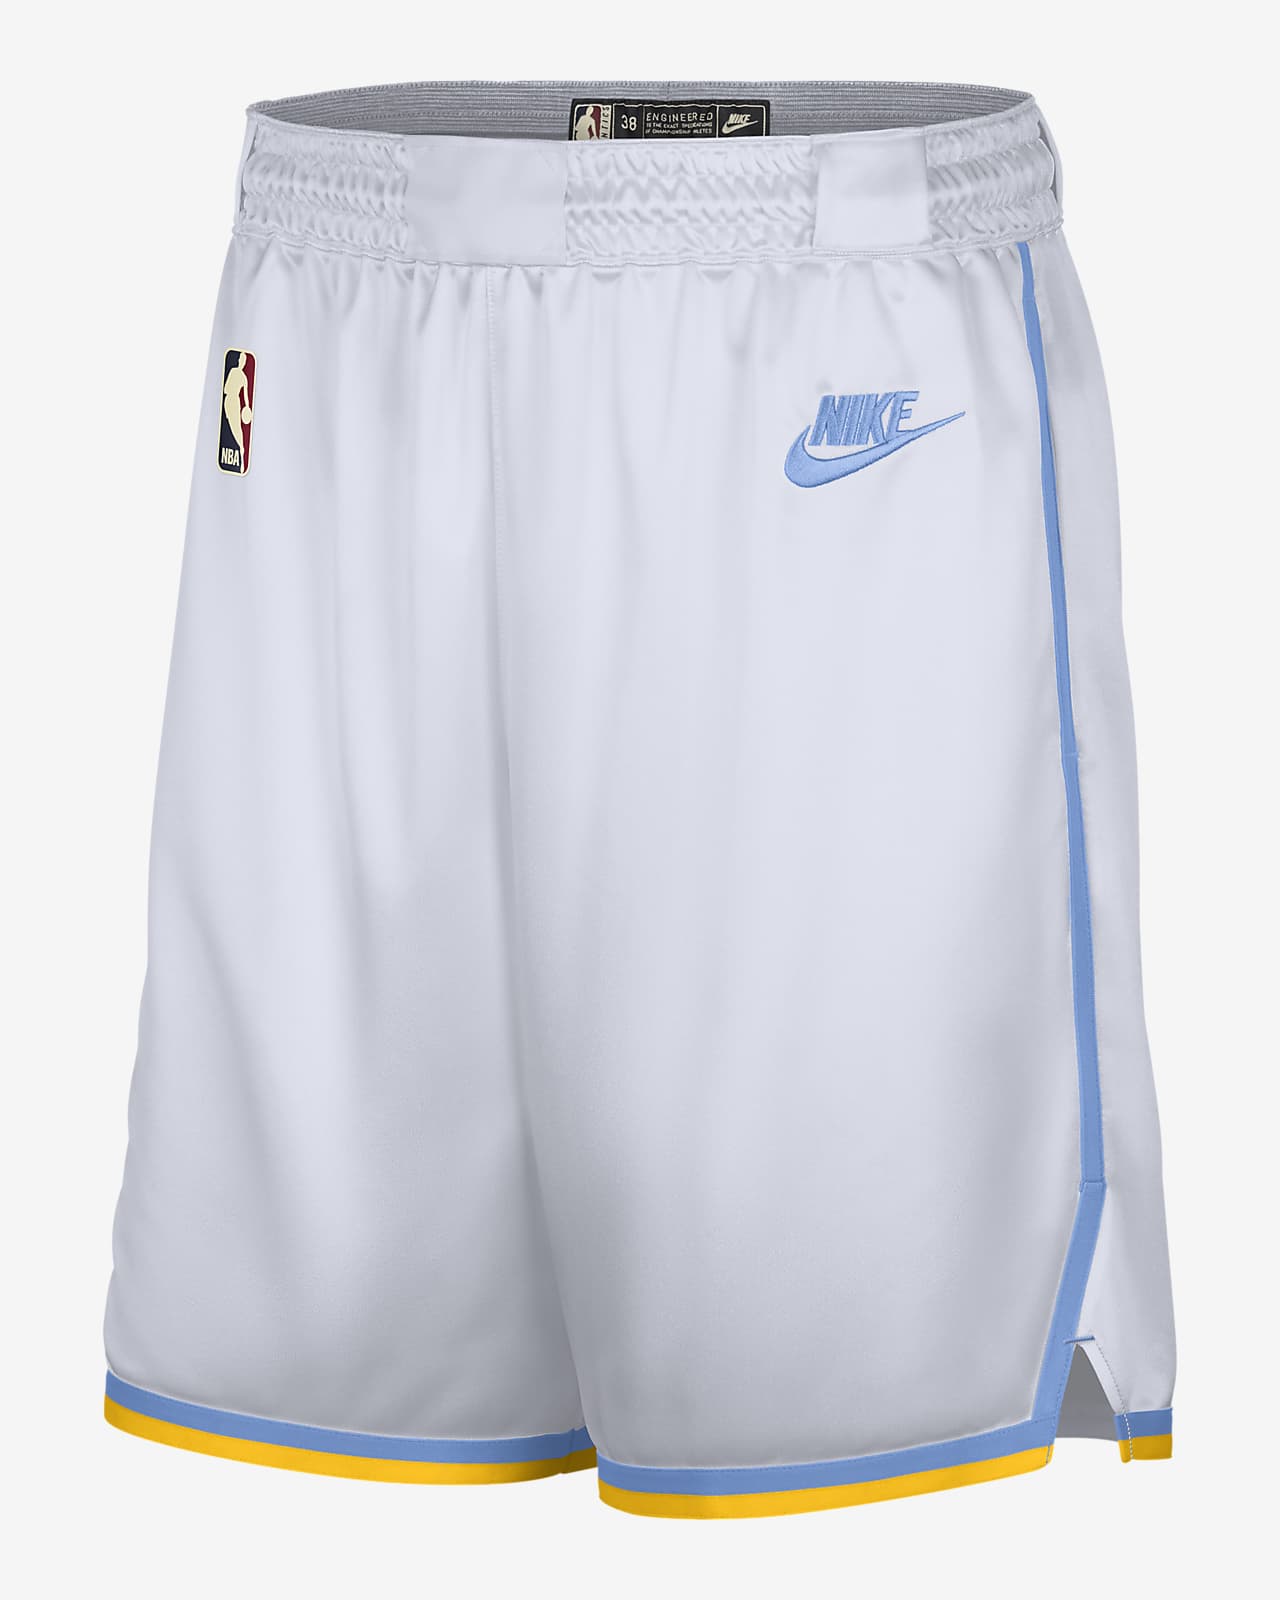 洛杉矶湖人队 Nike Dri-FIT NBA Swingman 男子短裤